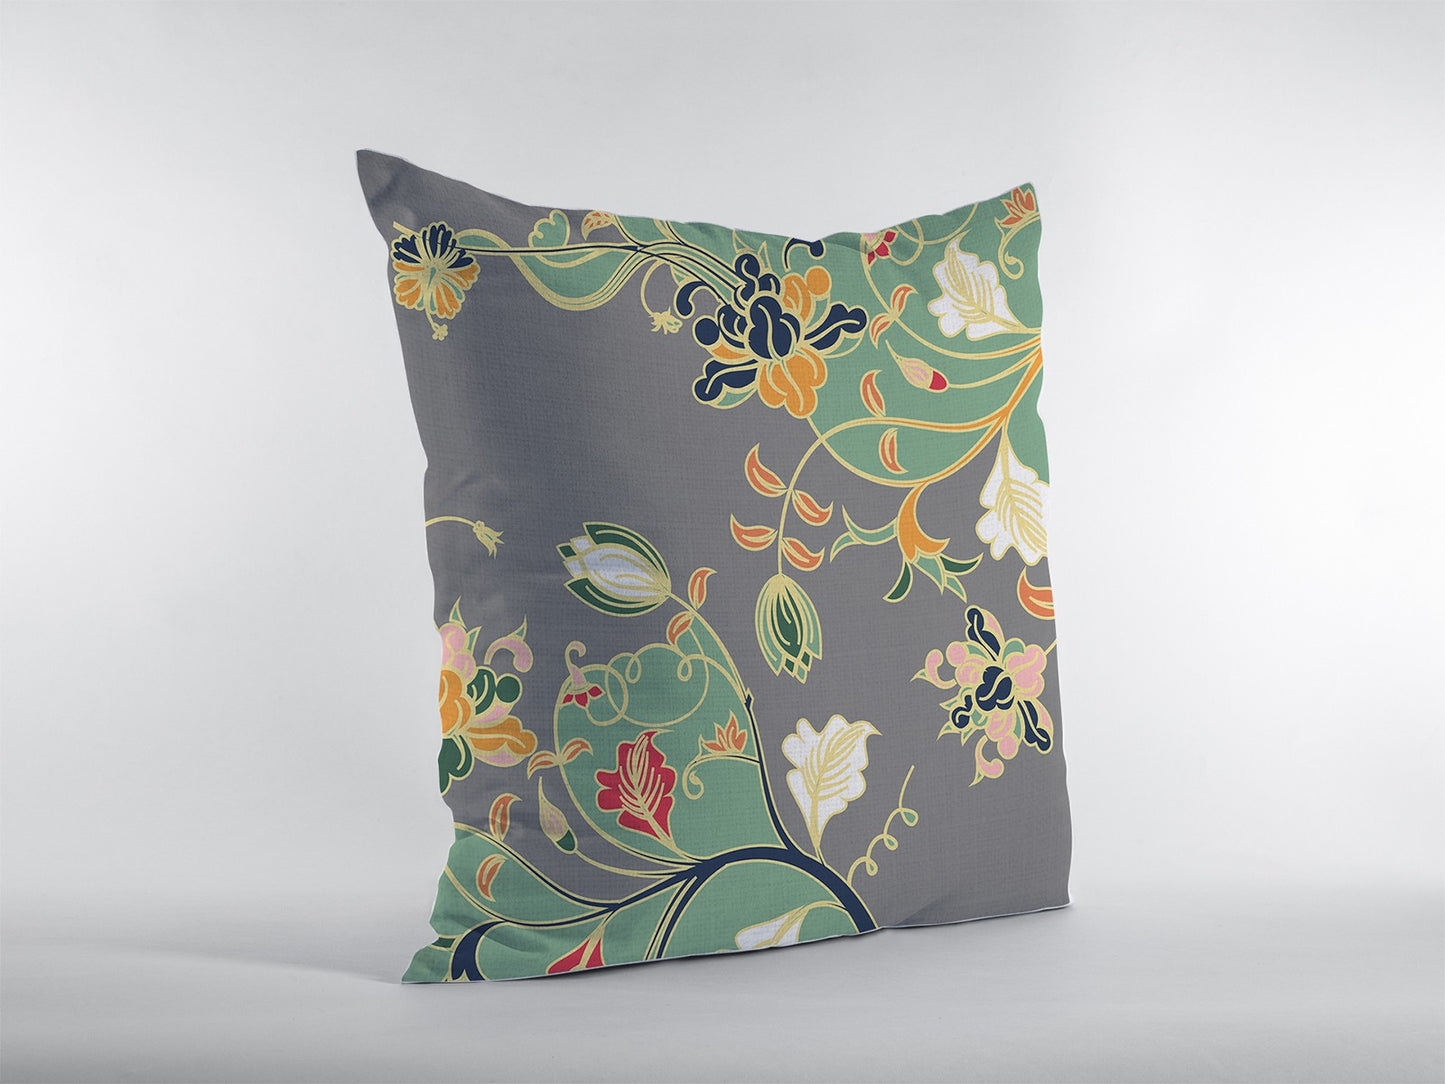 16" Green Gray Garden Decorative Suede Throw Pillow